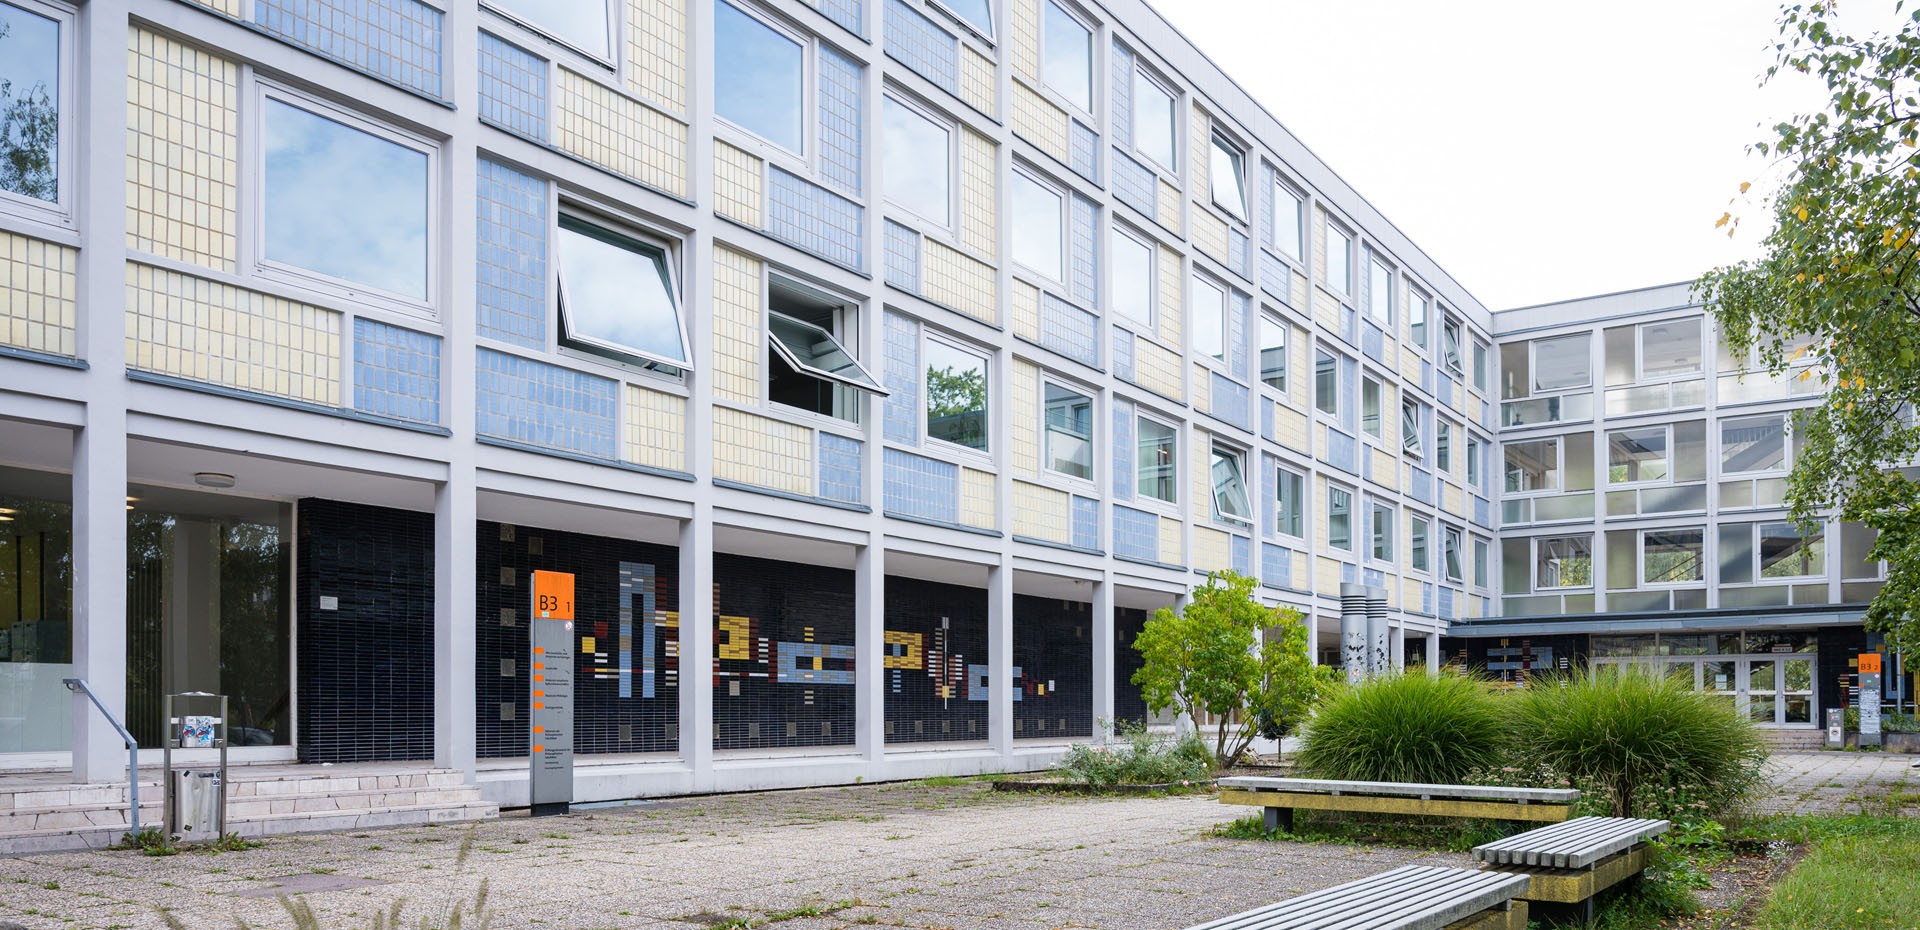 Gebäudeansicht B3 1 der Universität des Saarlandes